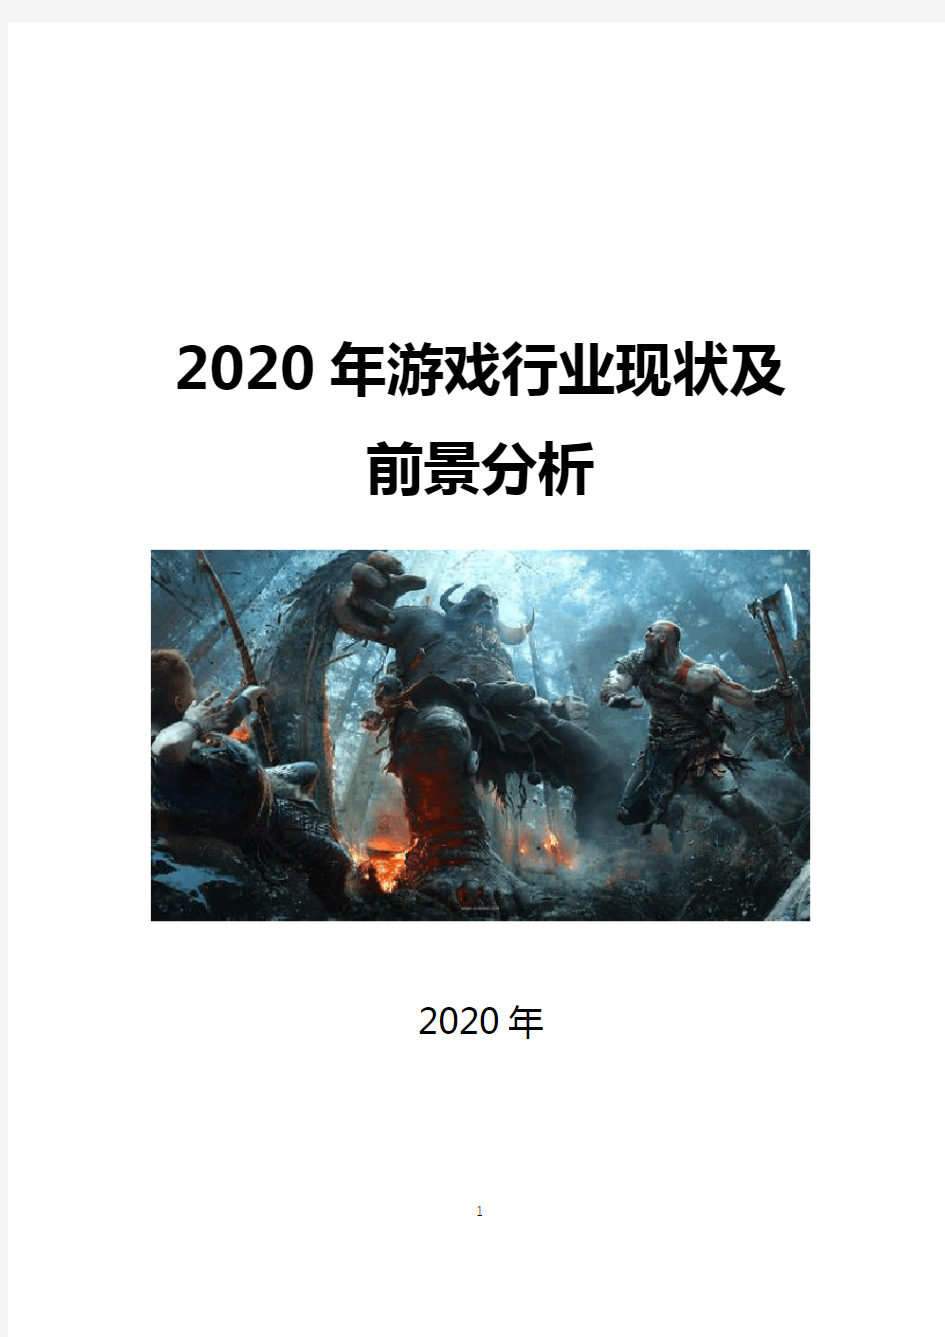 2020年中国游戏现状及前景分析